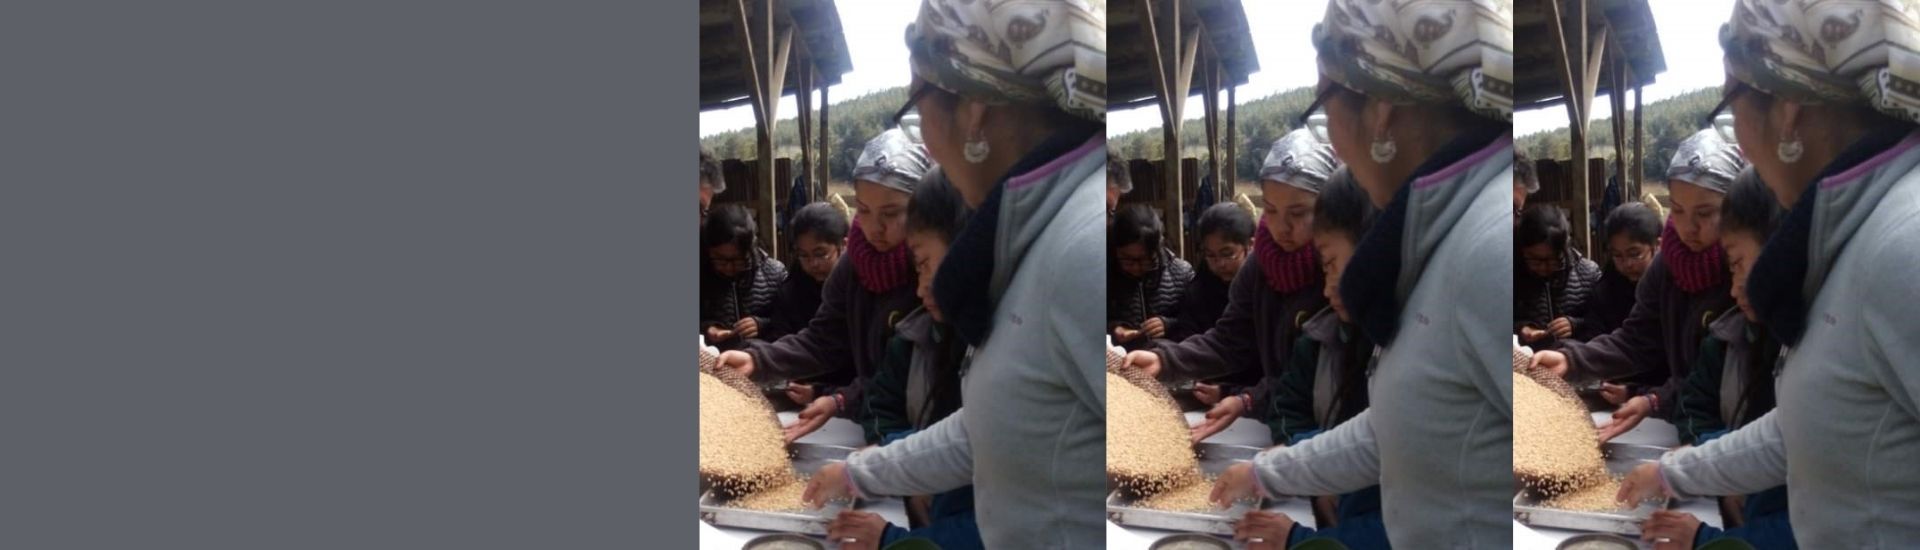 docente y sus estudiantes cocinando harina tostada